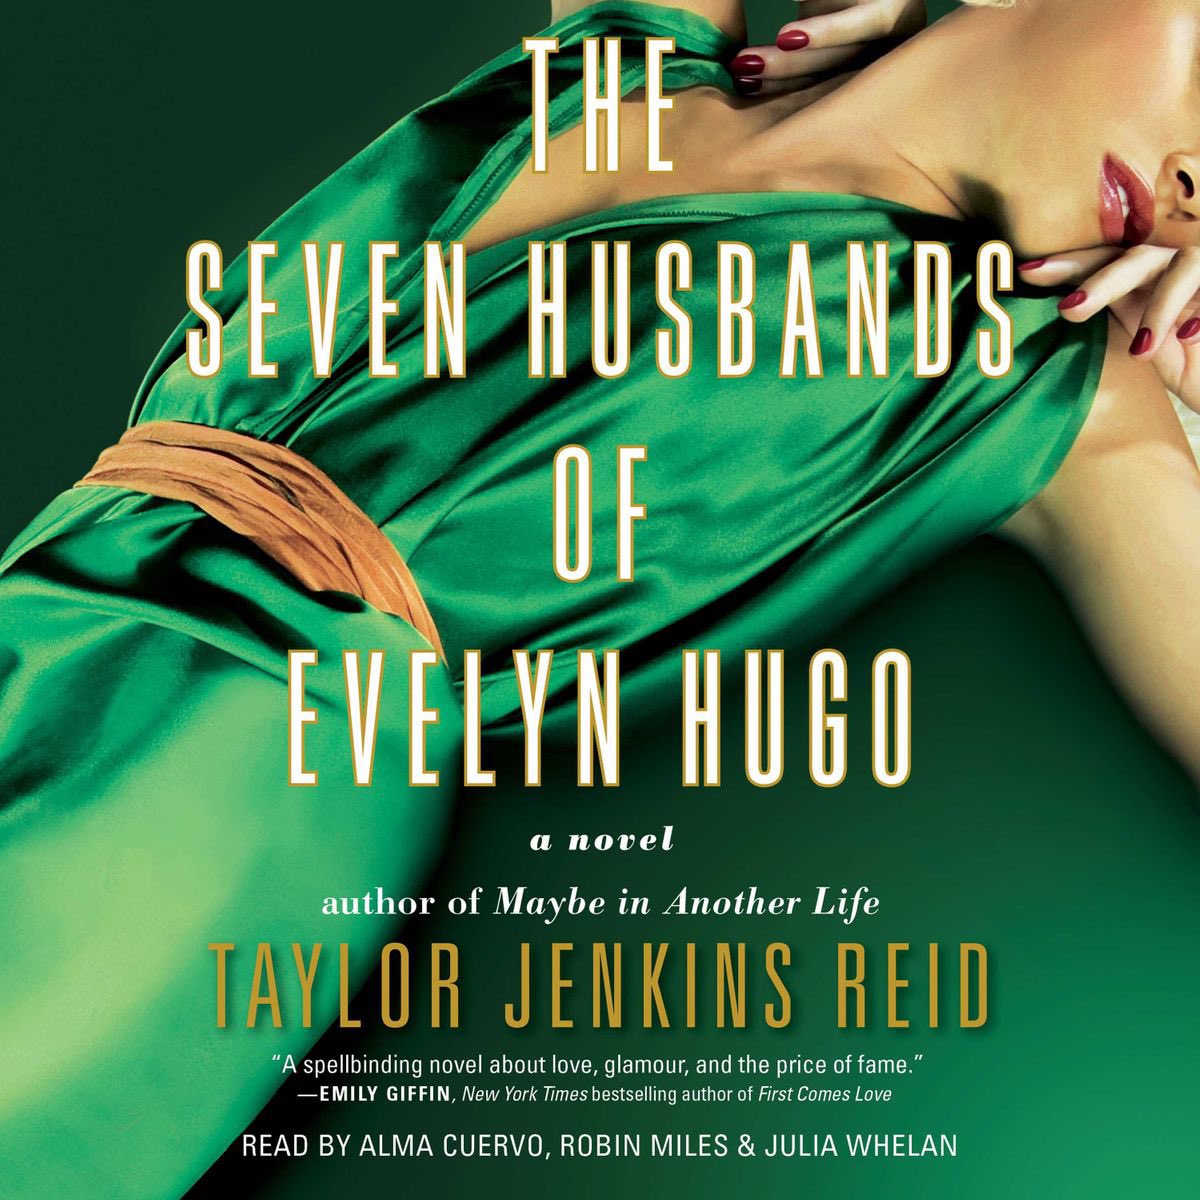 cr: the seven husbands of evelyn hugo